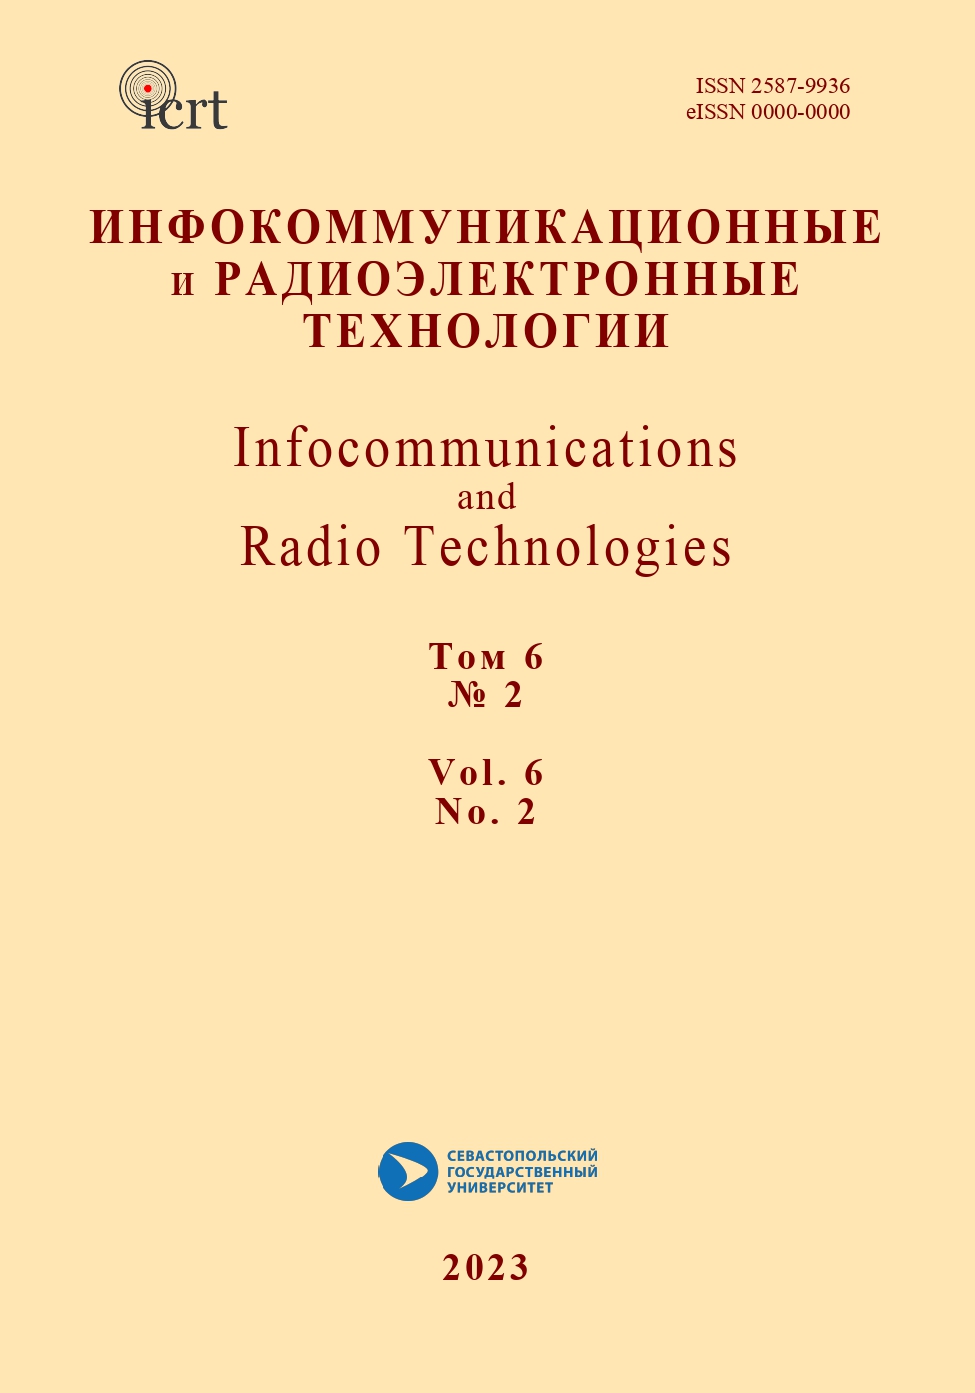             Роль радиолюбителей в исследованиях космоса и судьба крымских центров дальней  космической связи
    